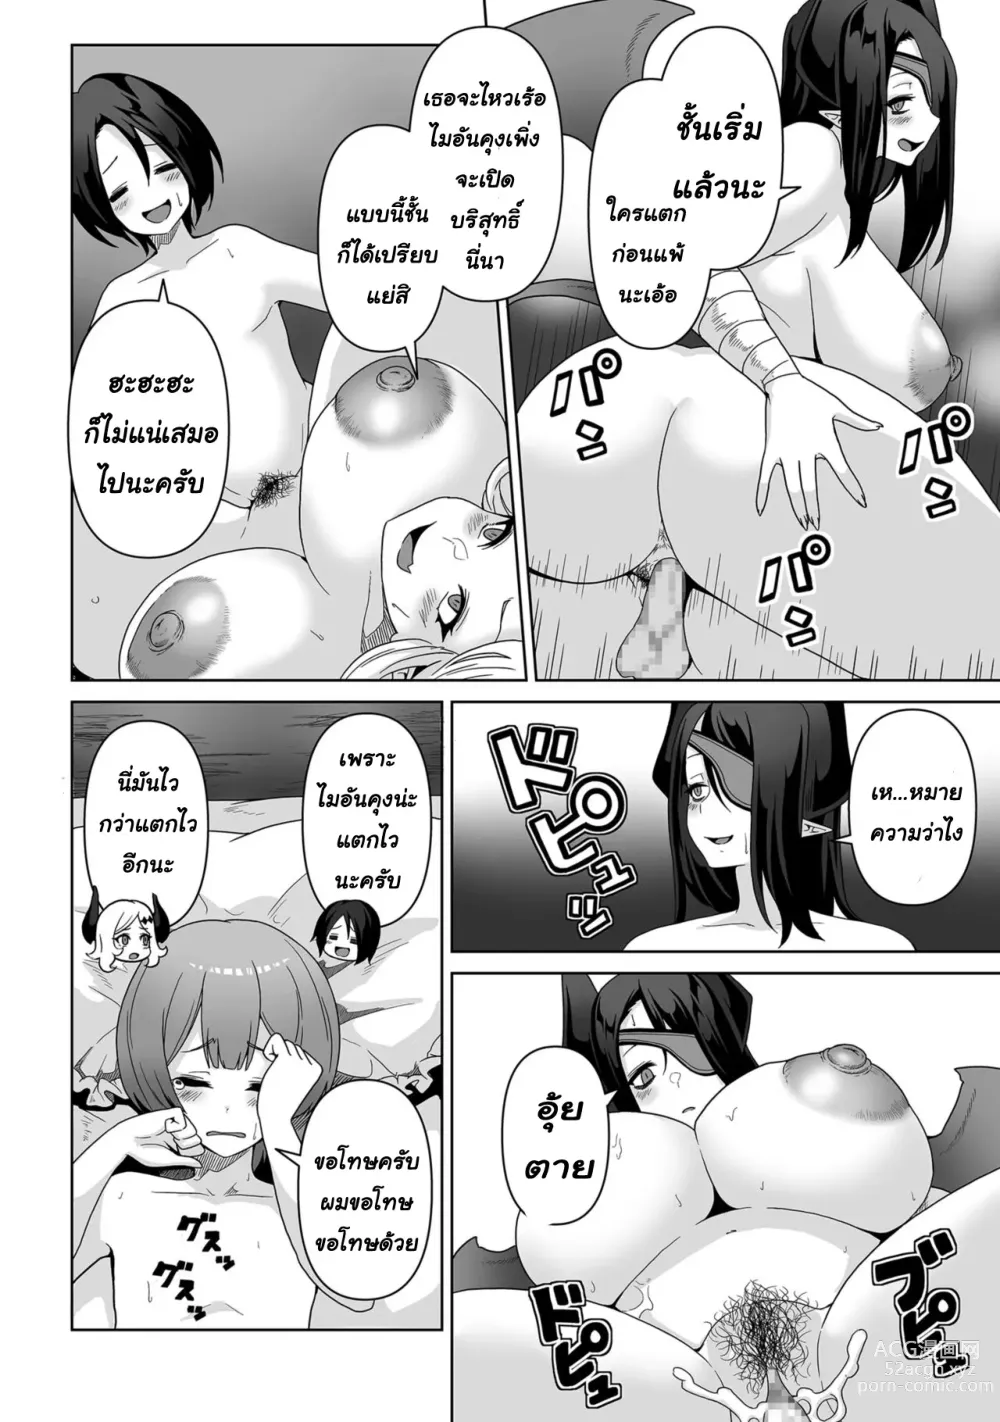 Page 17 of manga Sakyubasu kingudamu dai isekai kara kita shounen 2